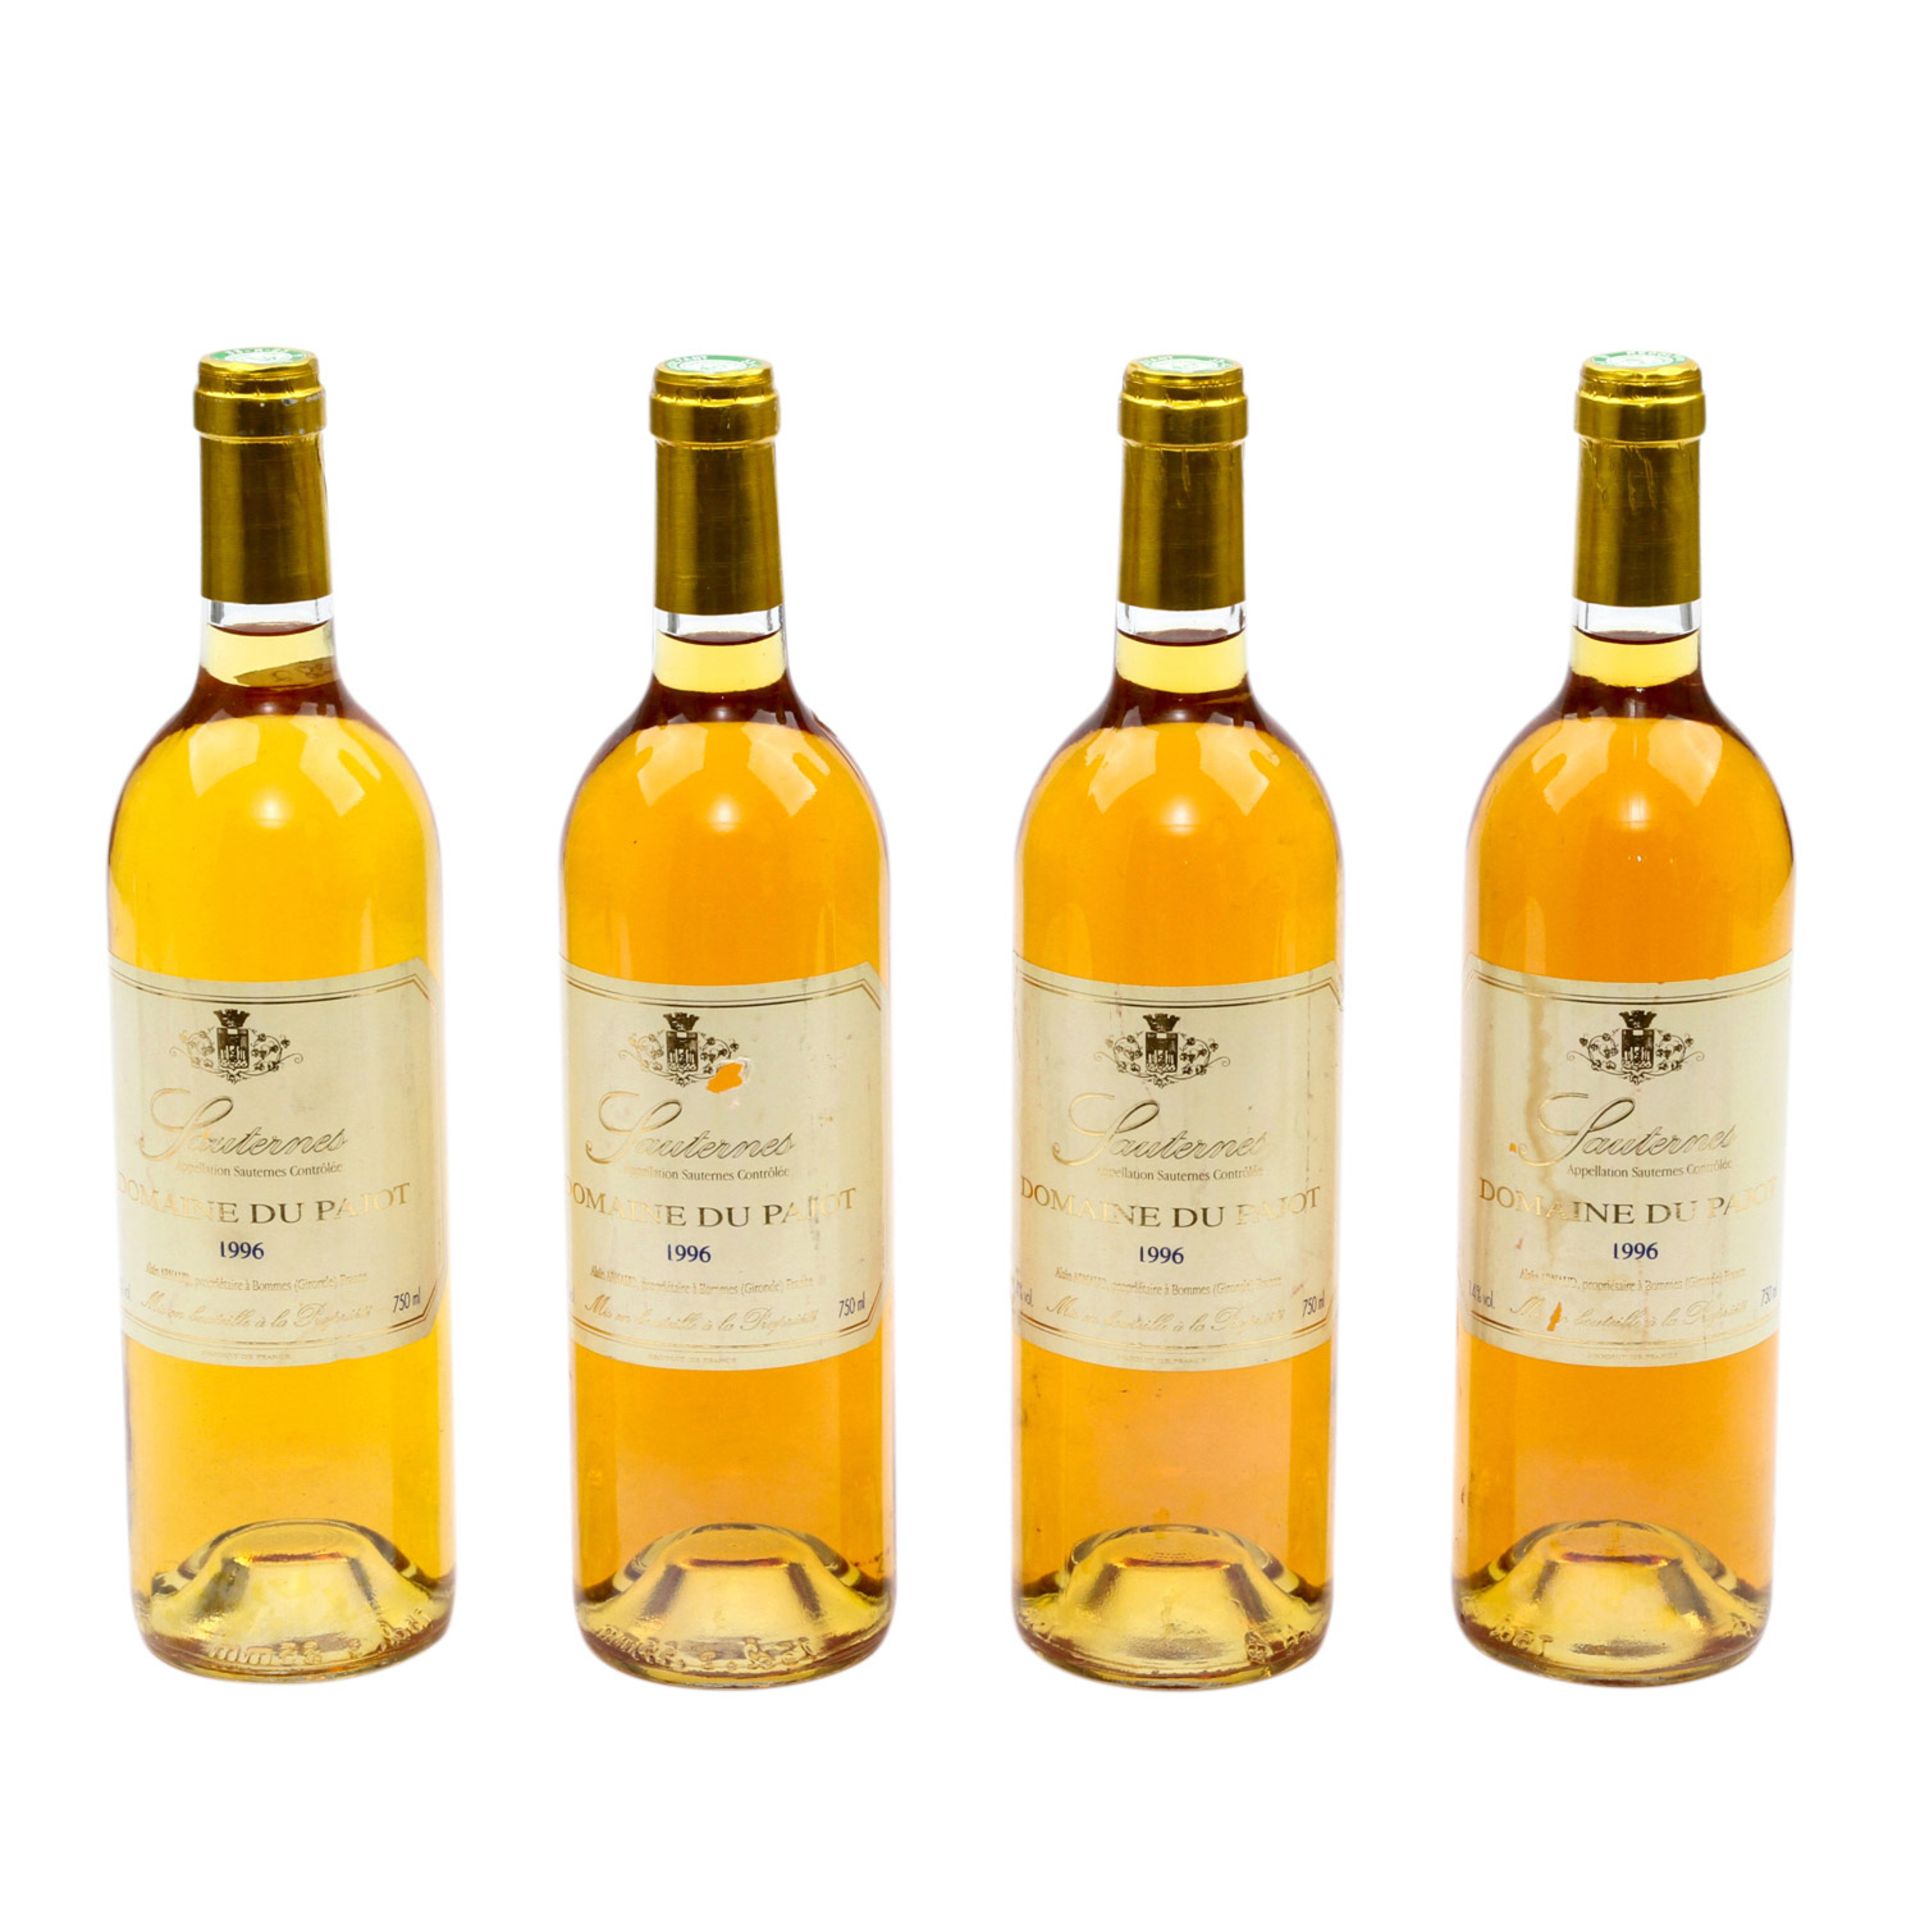 4 Flaschen SAUTERNES Domaine du Pajot 1996Sauternes, Frankreich, Weisswein, 14% Vol., 750 ml,